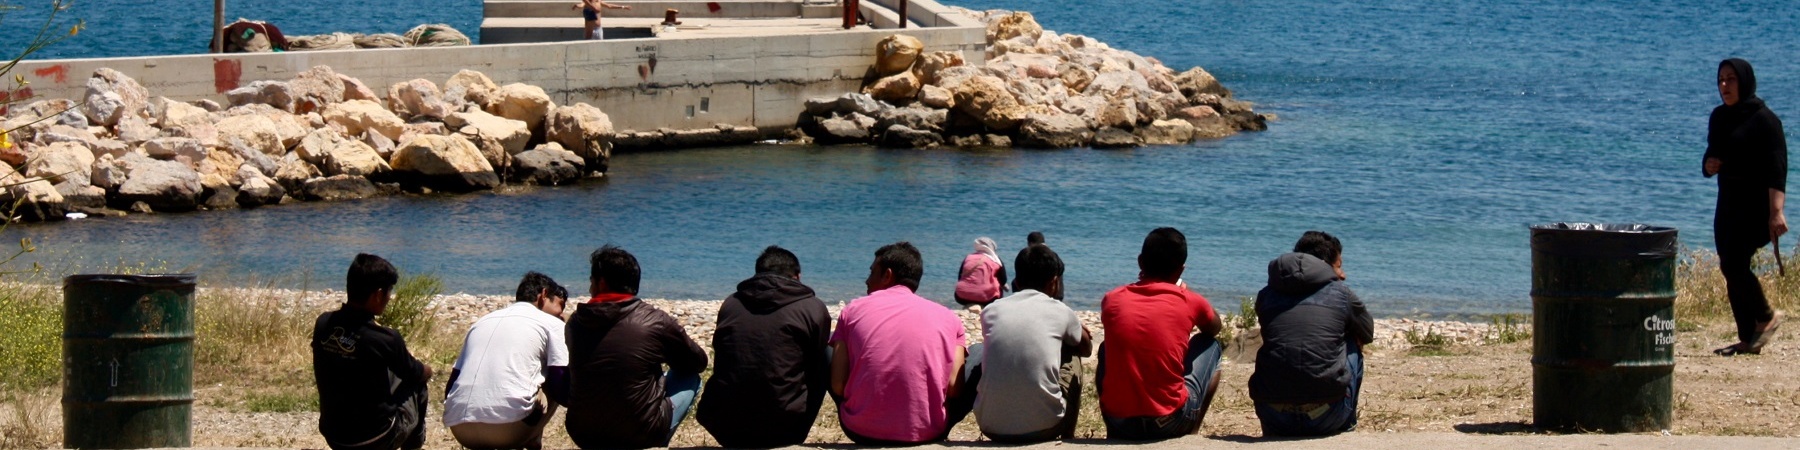 bambini migranti di spalle seduti davanti al mare